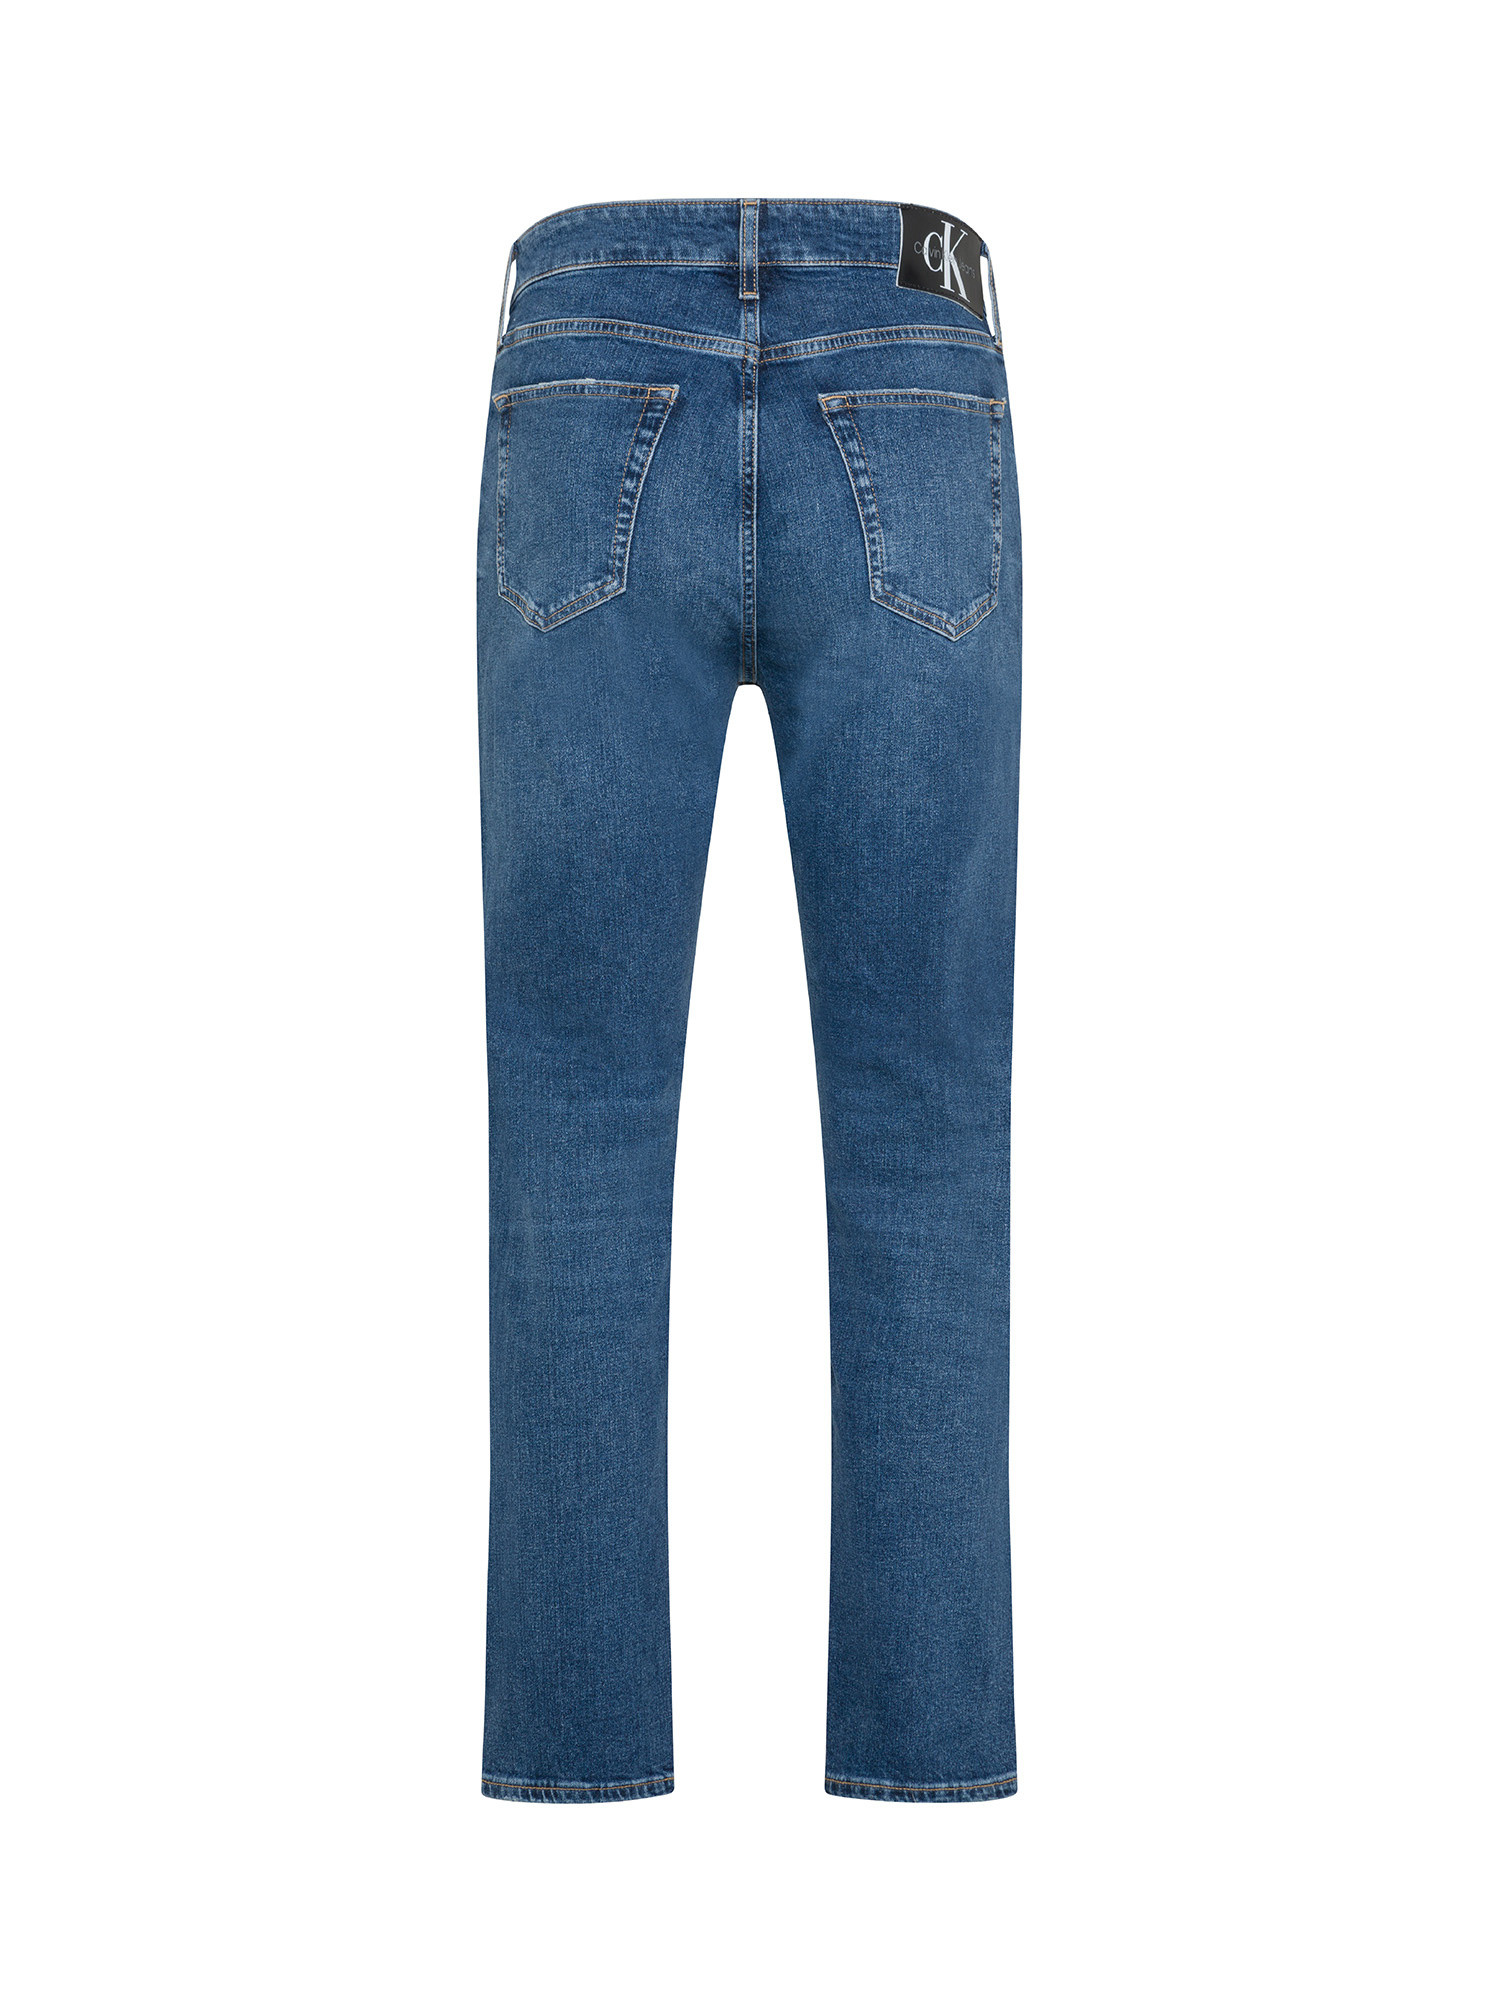 Jeans 5 tasche, Denim, large image number 1